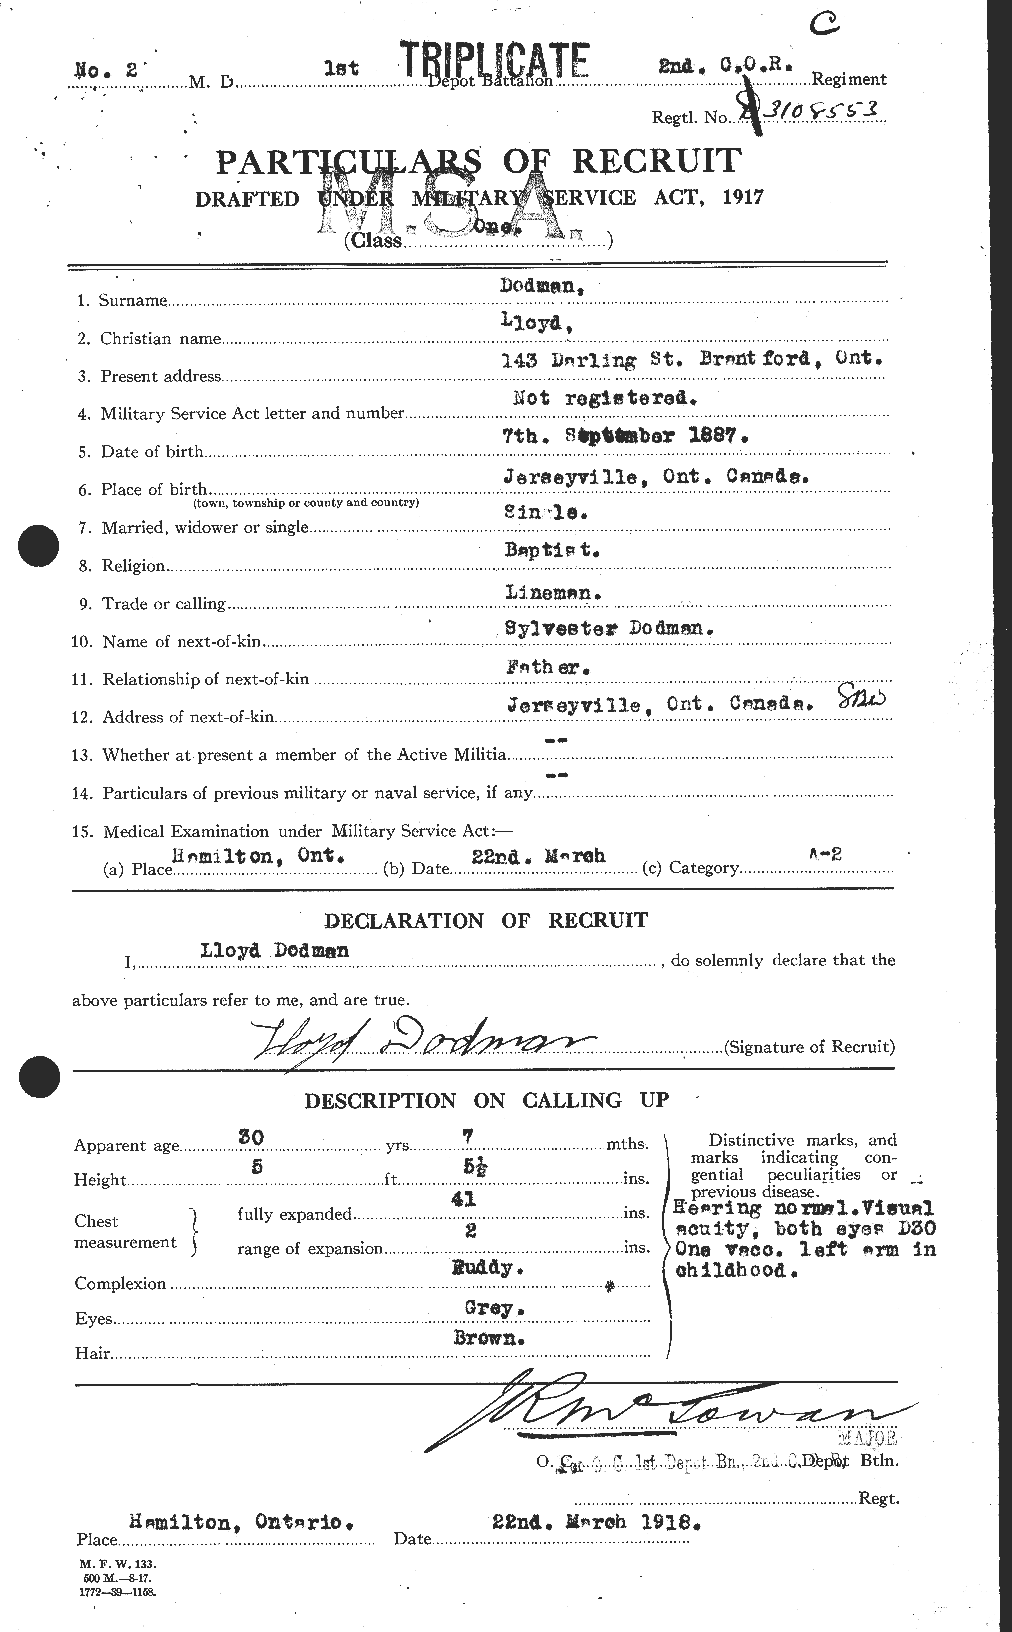 Dossiers du Personnel de la Première Guerre mondiale - CEC 294524a